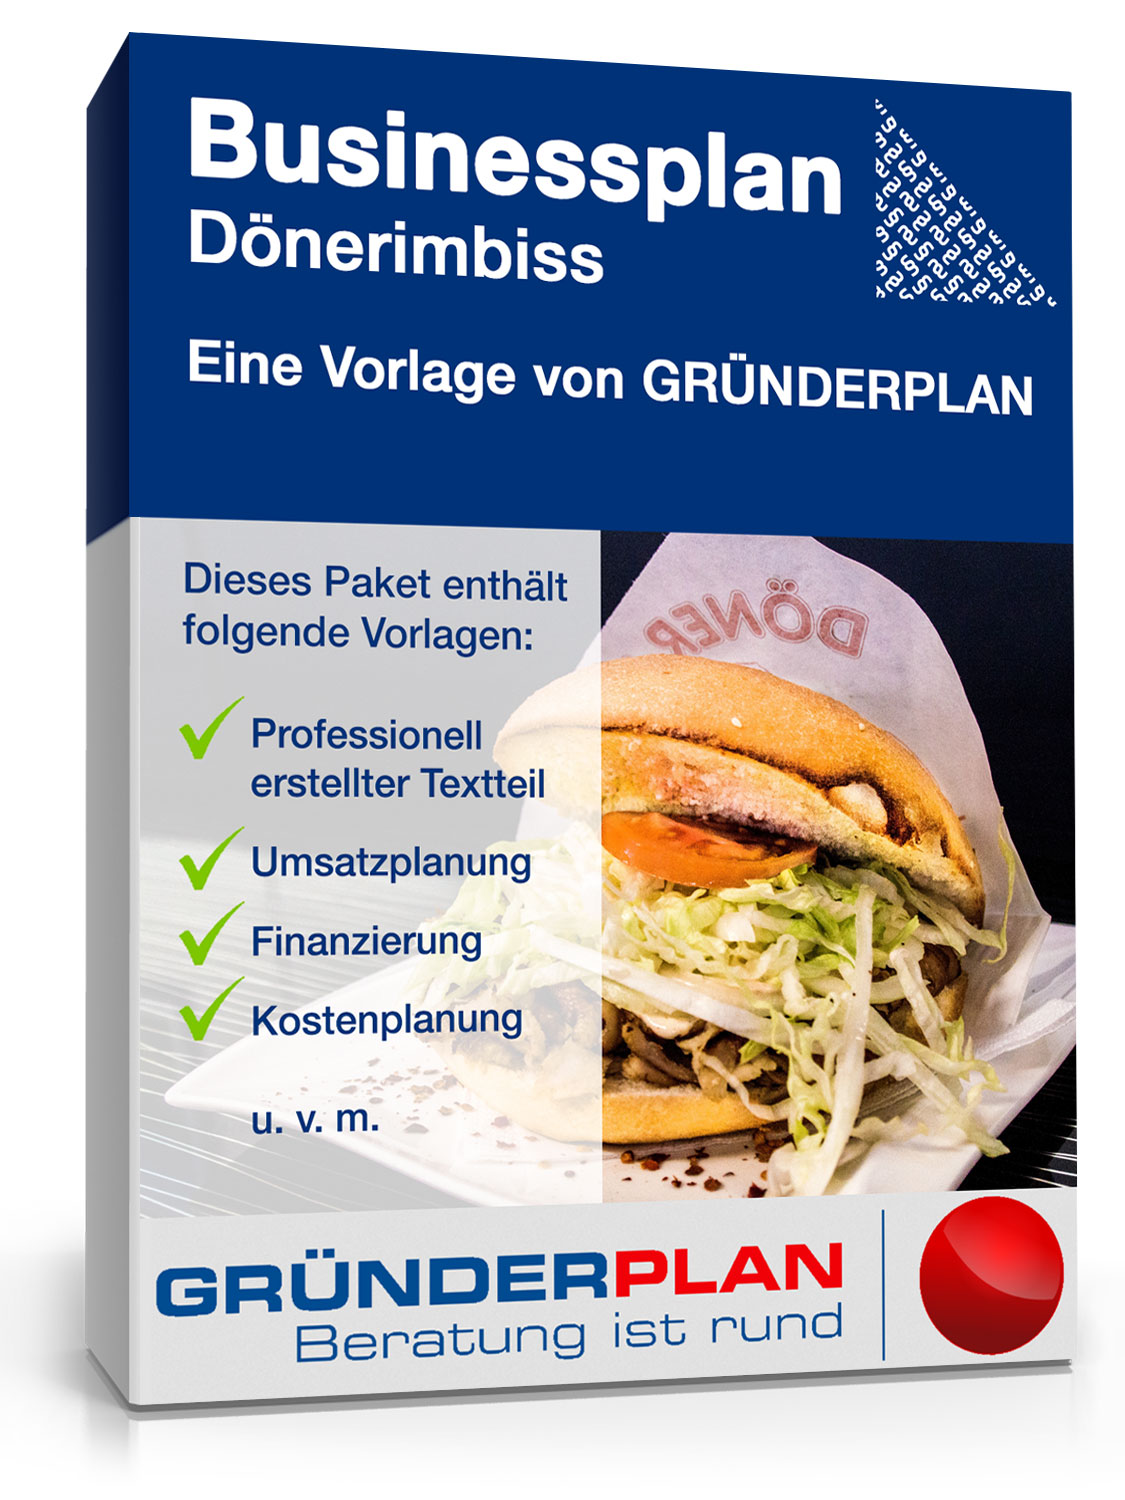 Hauptbild des Produkts: Businessplan Dönerimbiss